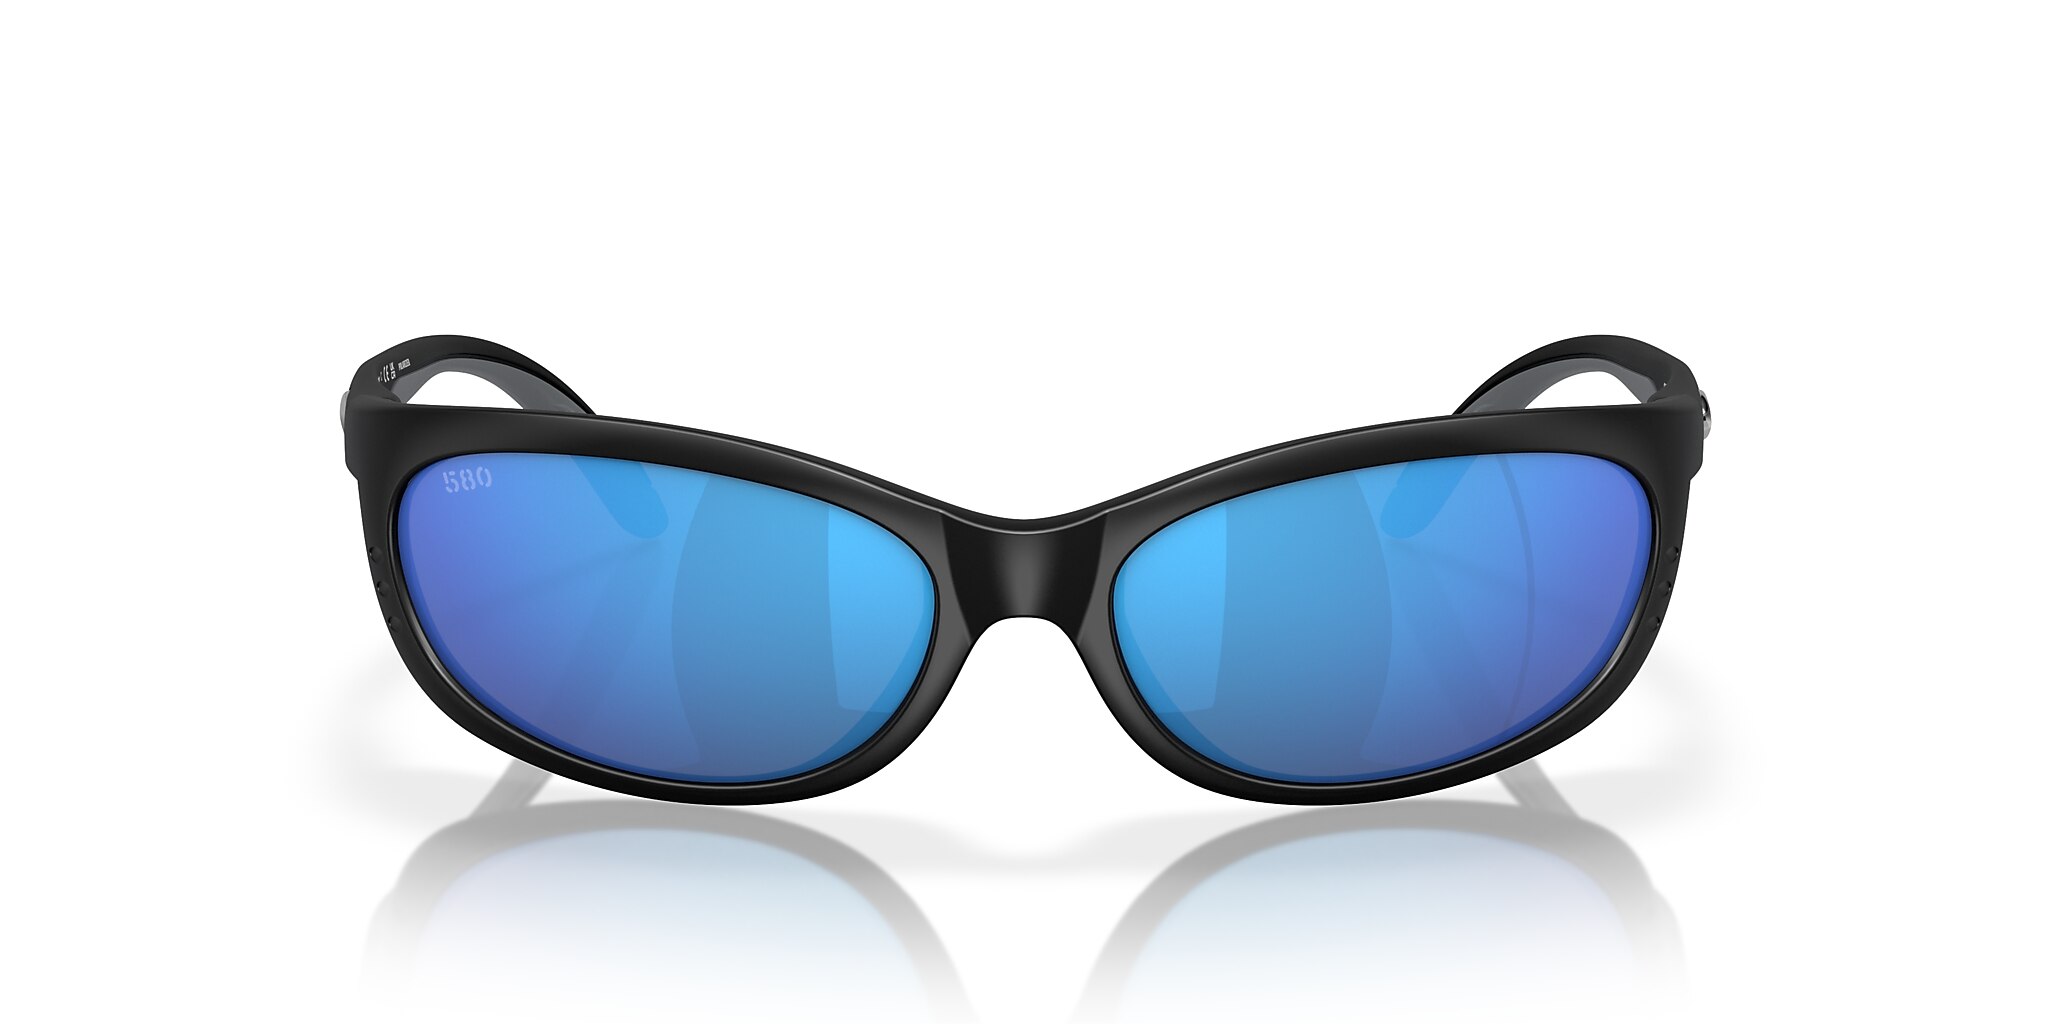 Fathom Polarized Sunglasses in Blue Mirror | Costa Del Mar®